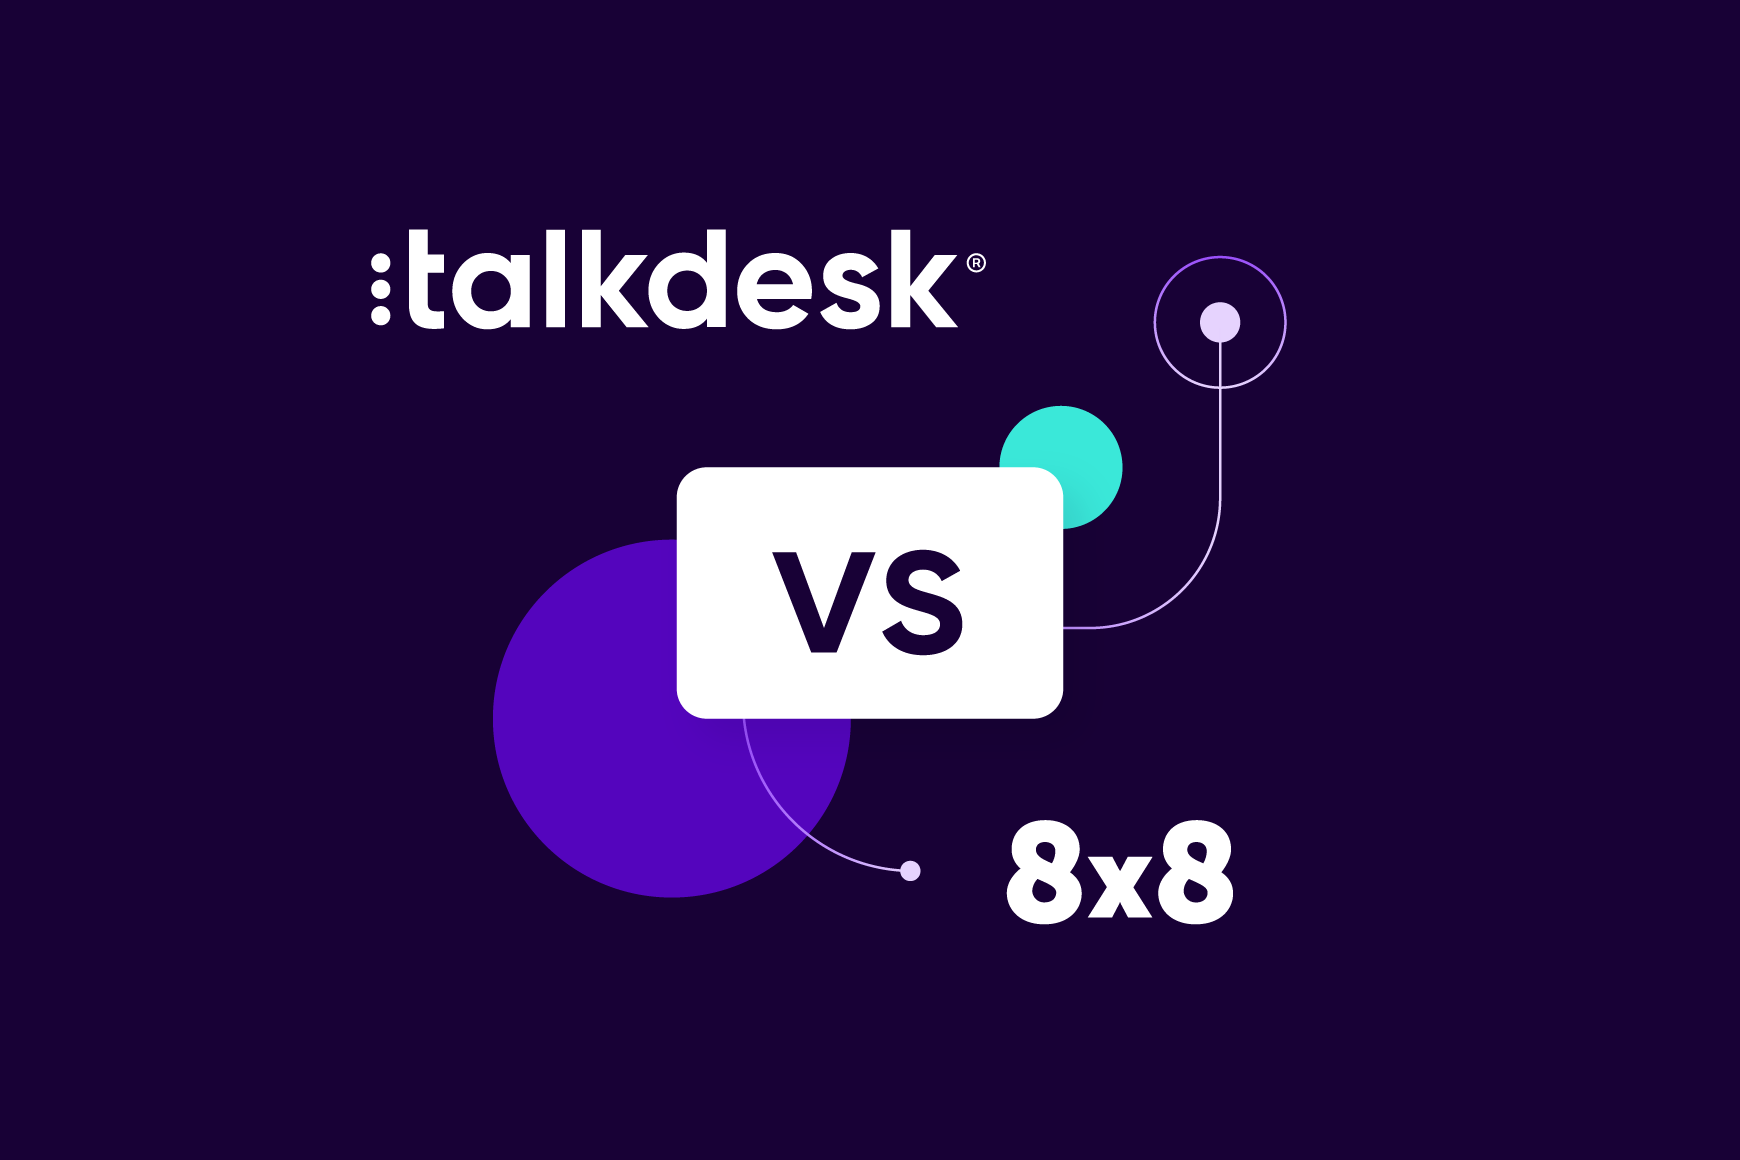 Talkdesk vs. 8x8